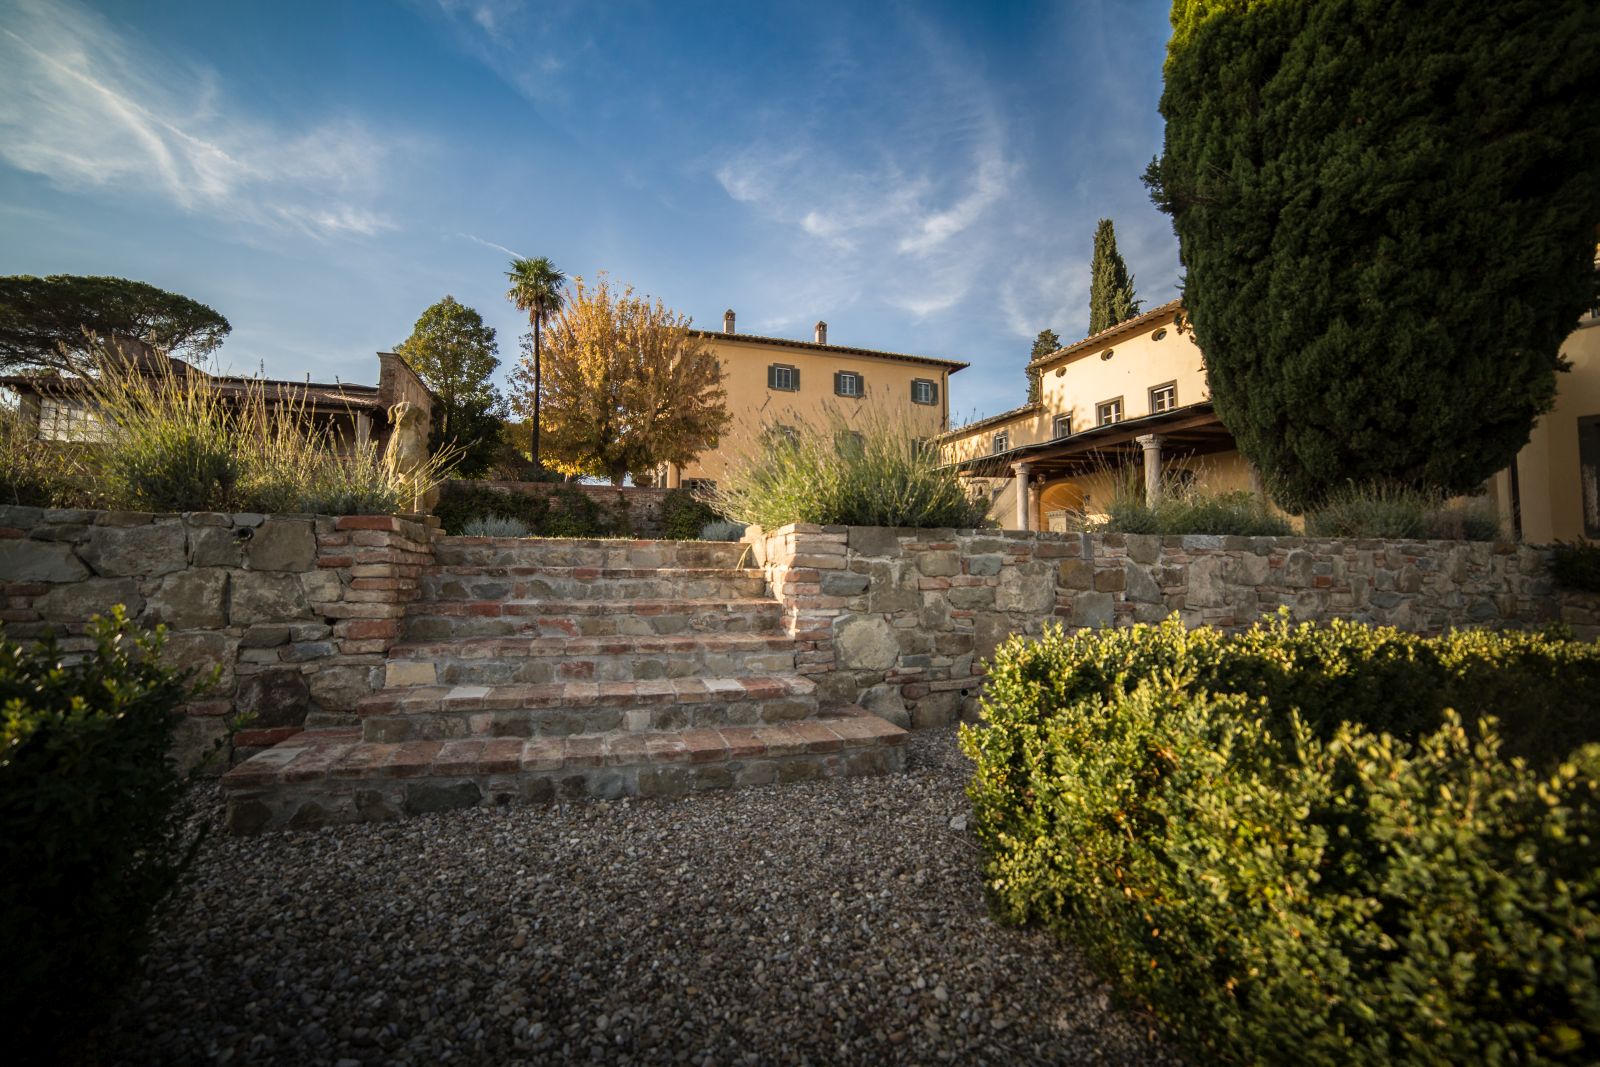 The facade and gardens of Tenuta La Contessa